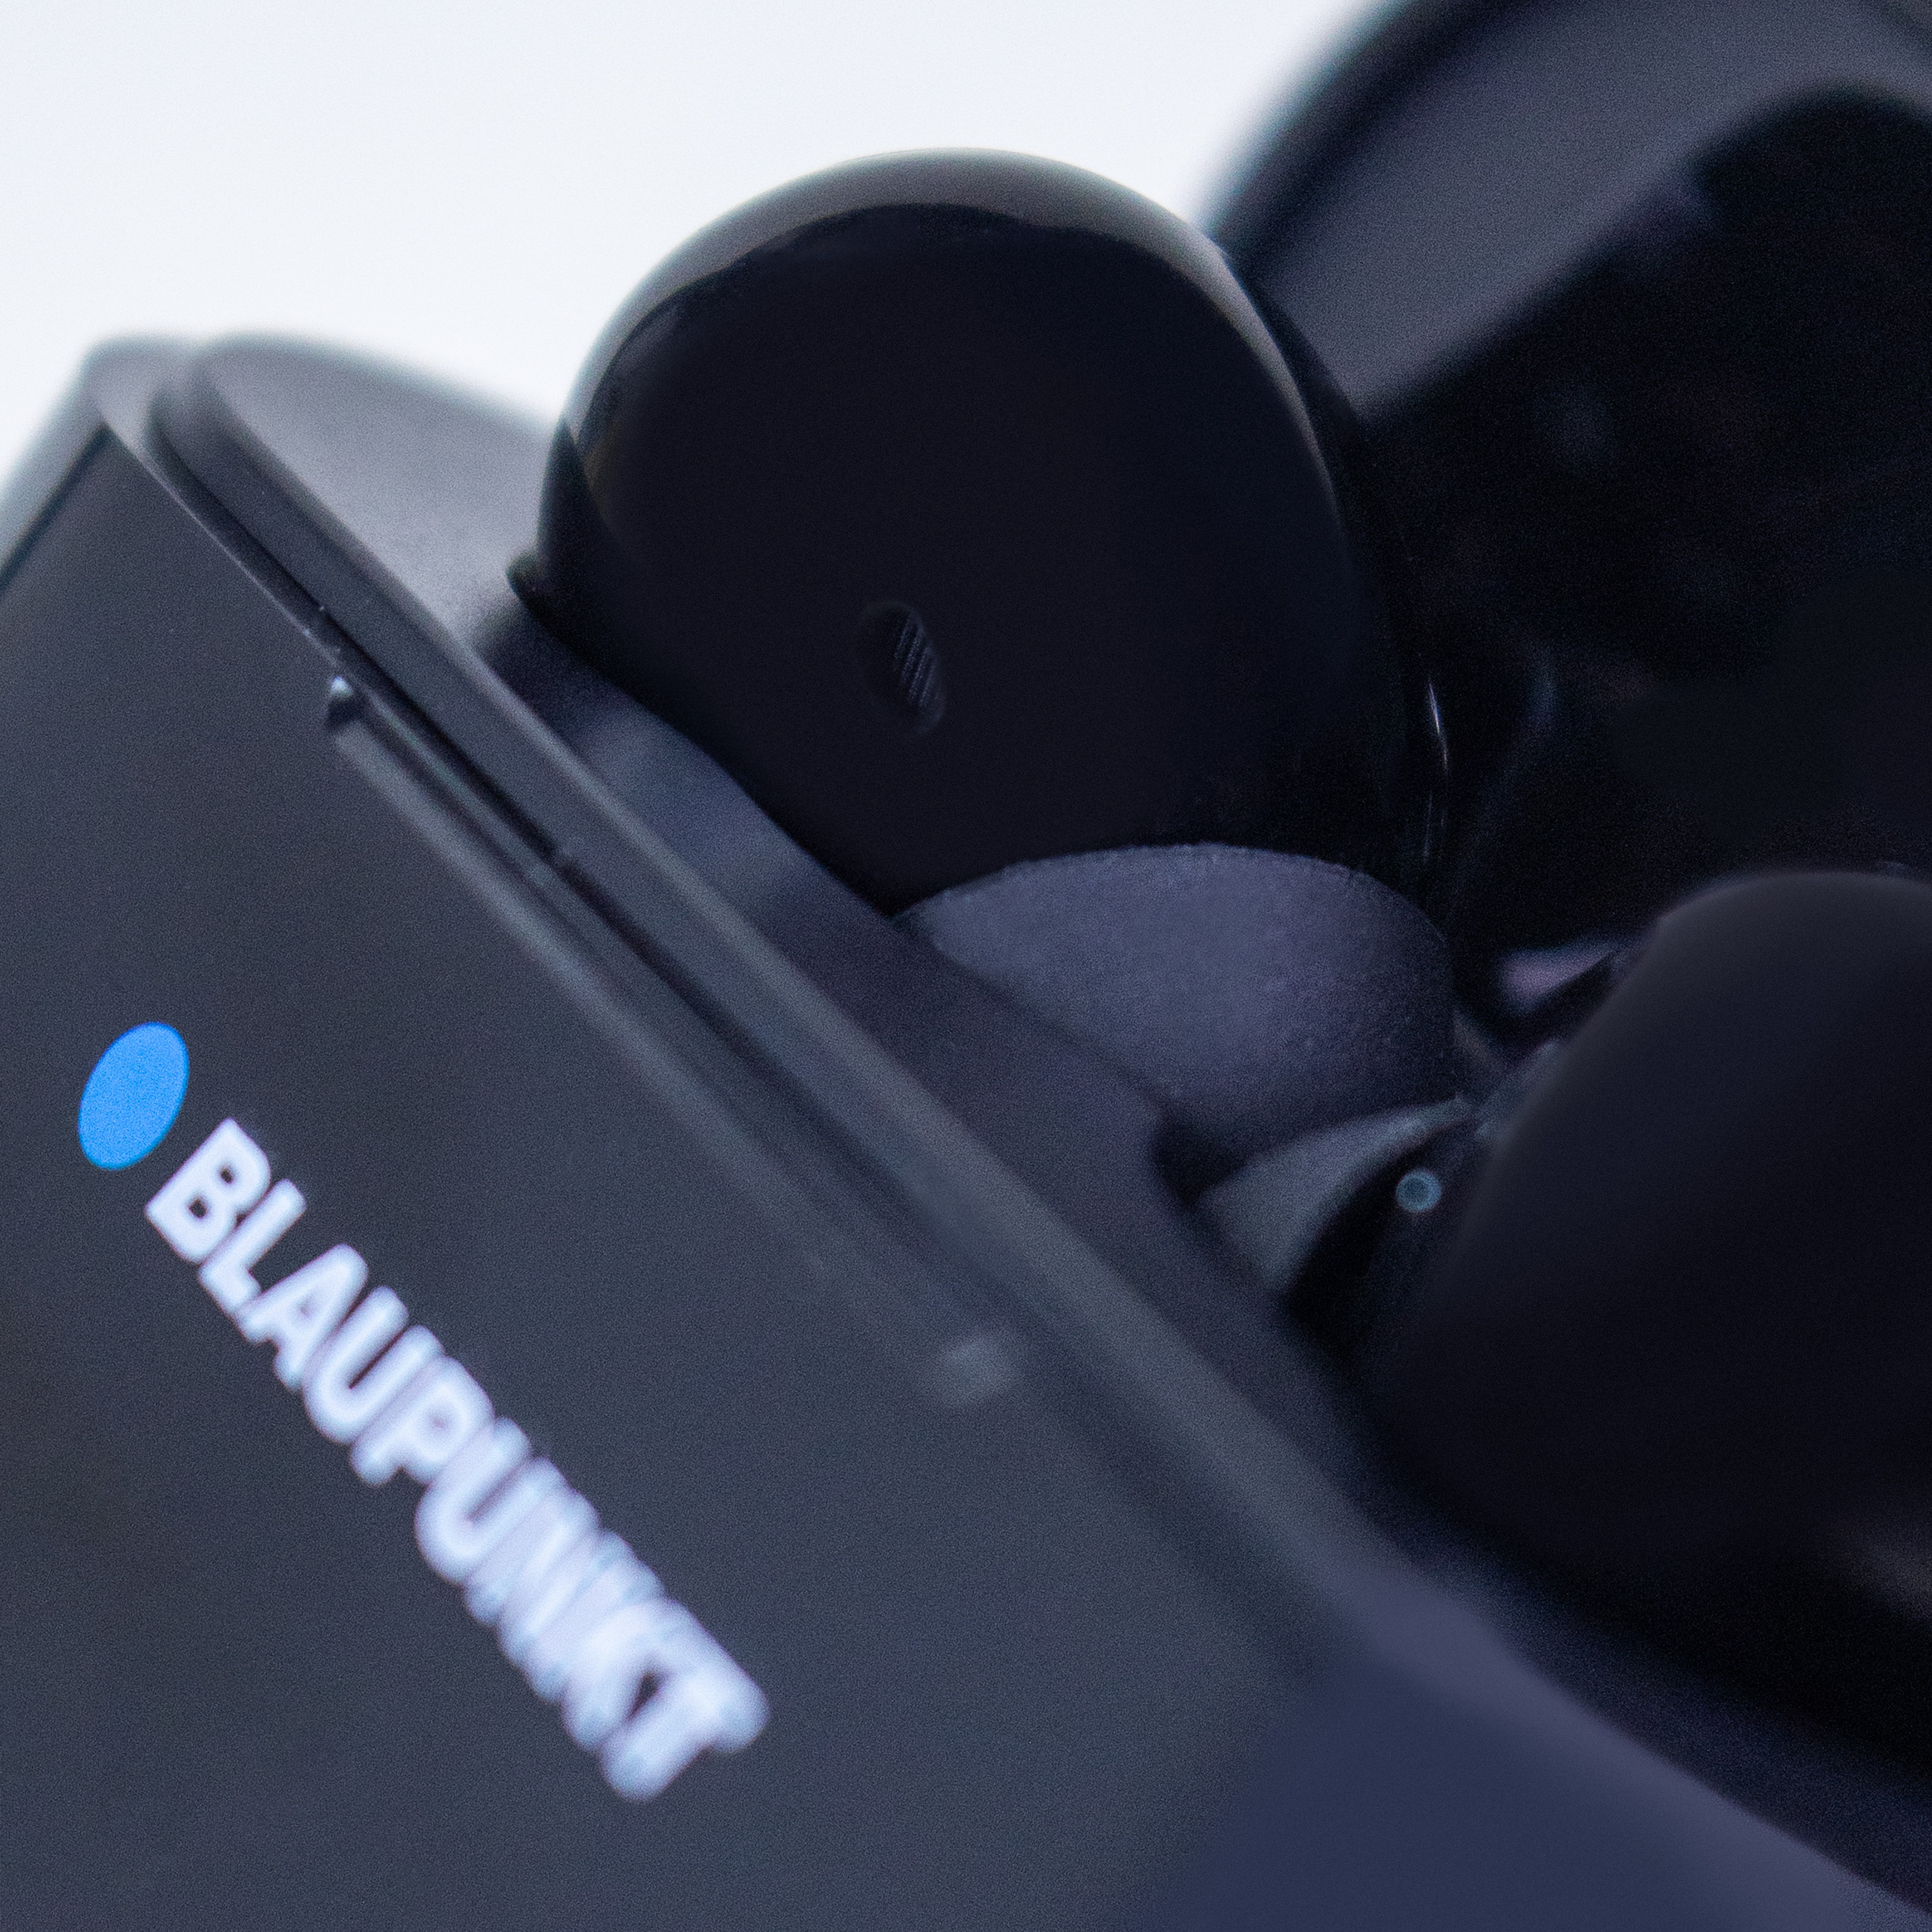 BLAUPUNKT TWS schwarz Bluetooth 30, mit Bluetooth Kopfhörer ANC In-ear